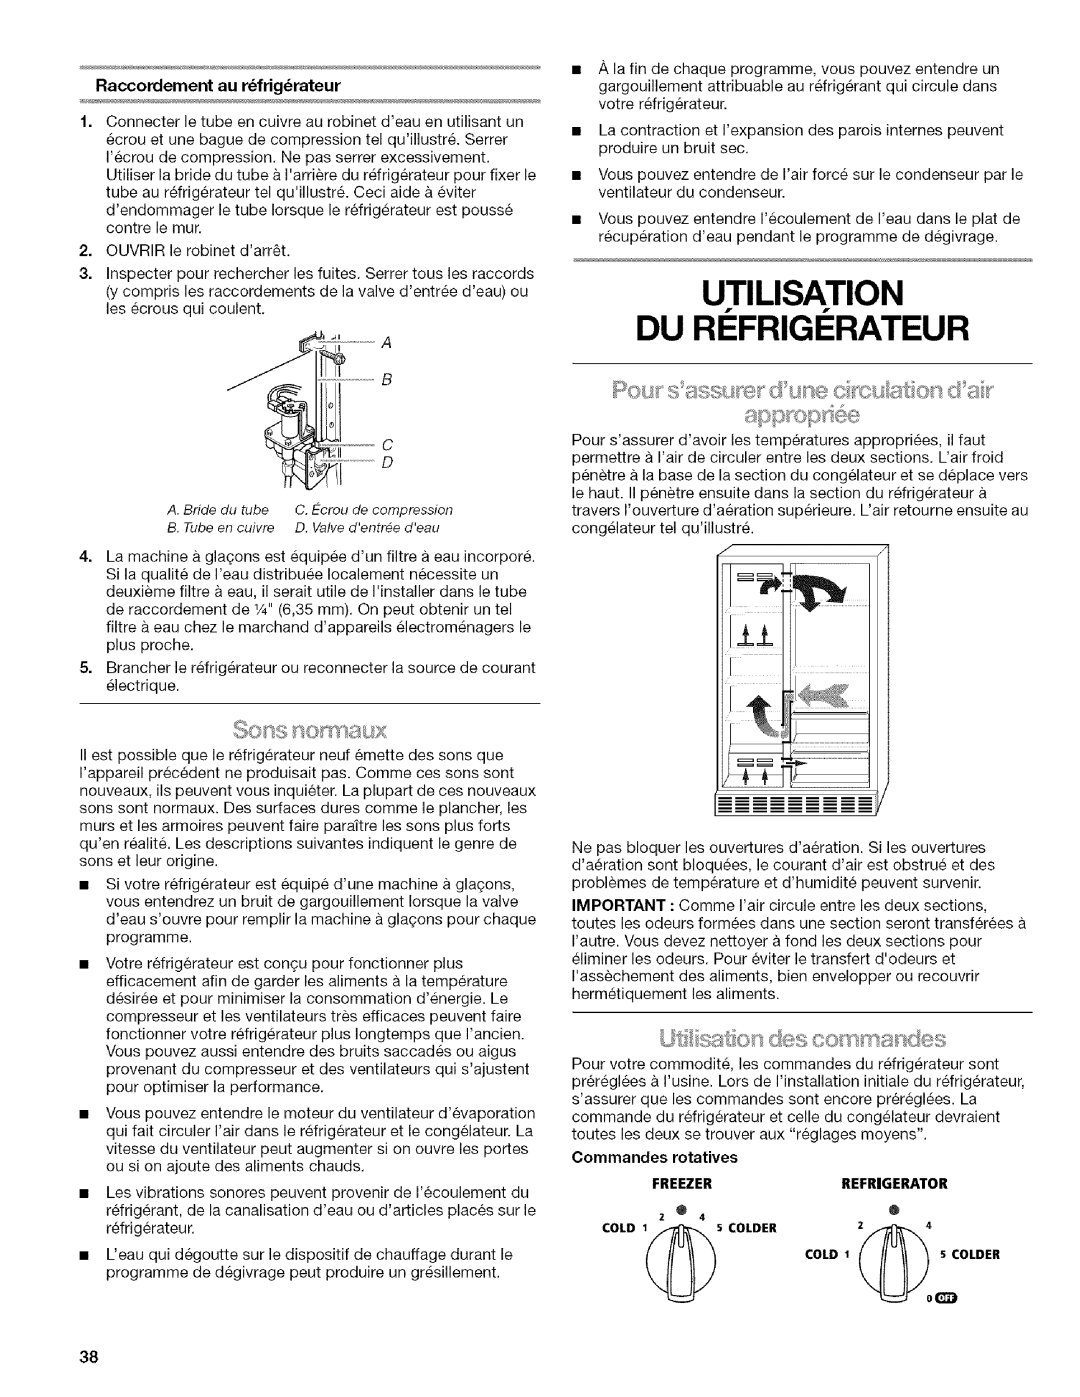 Kenmore w10144349A manual Utilisation Du Ri Frigi Rateur, sst @sdes c x/s nandes, Raccordement au r_frig_rateur 